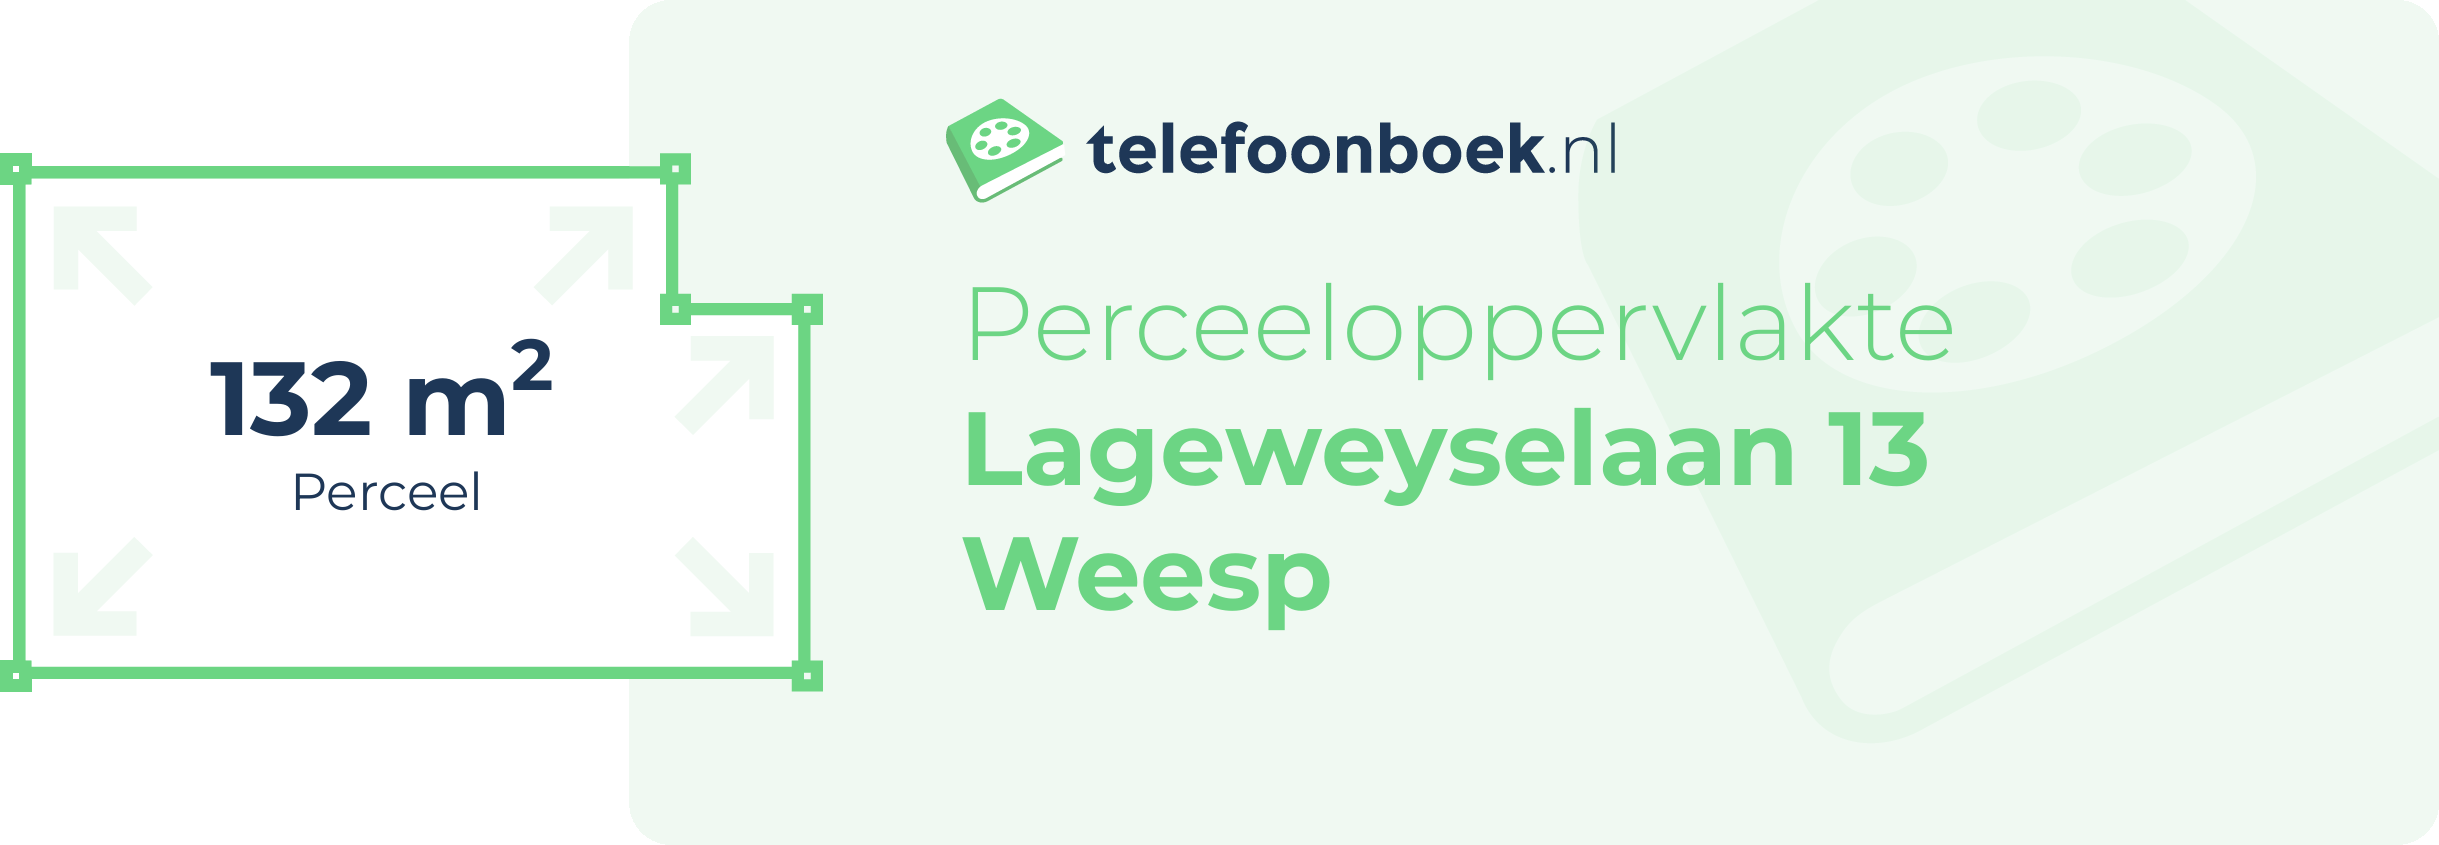 Perceeloppervlakte Lageweyselaan 13 Weesp